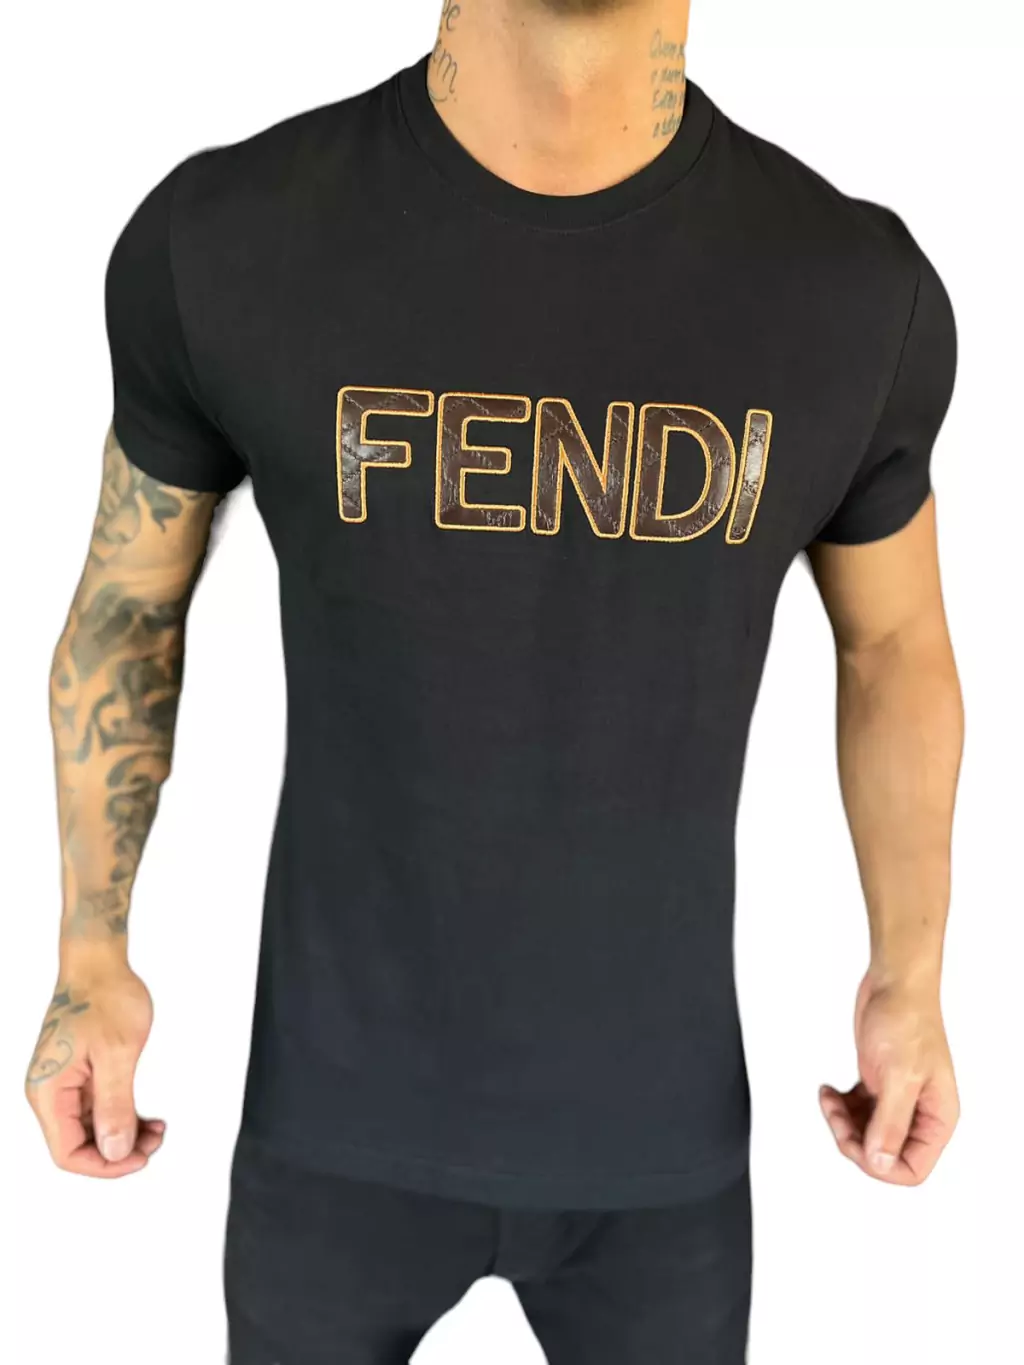 Camiseta Peruana Cotton Fendi 001 - Site das Marcas